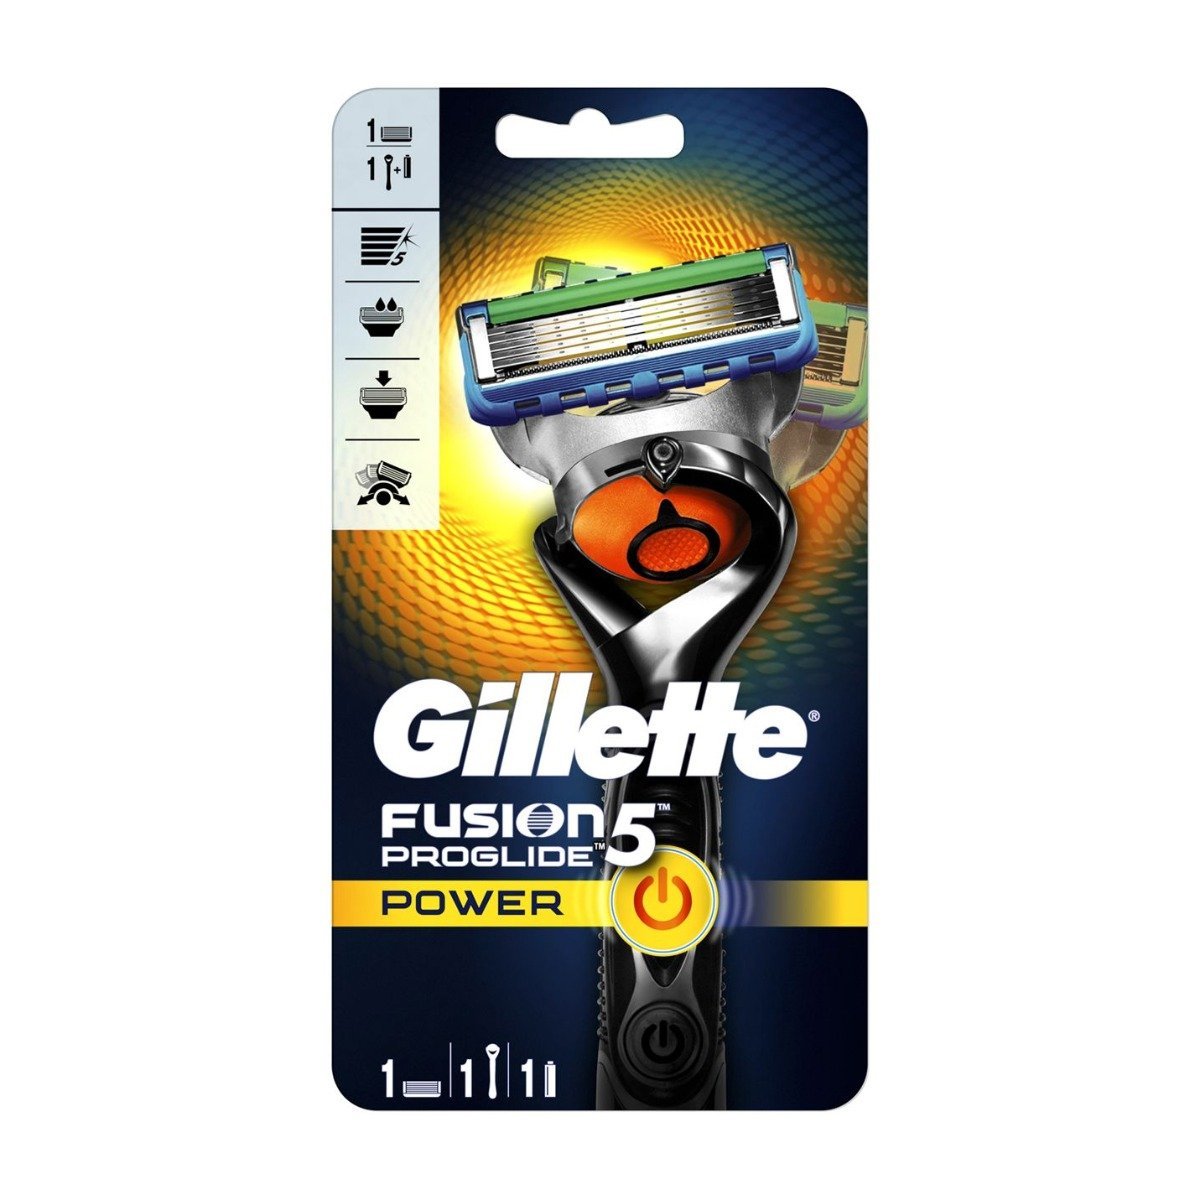 Gillette Fusion5 Proglide Power Razor